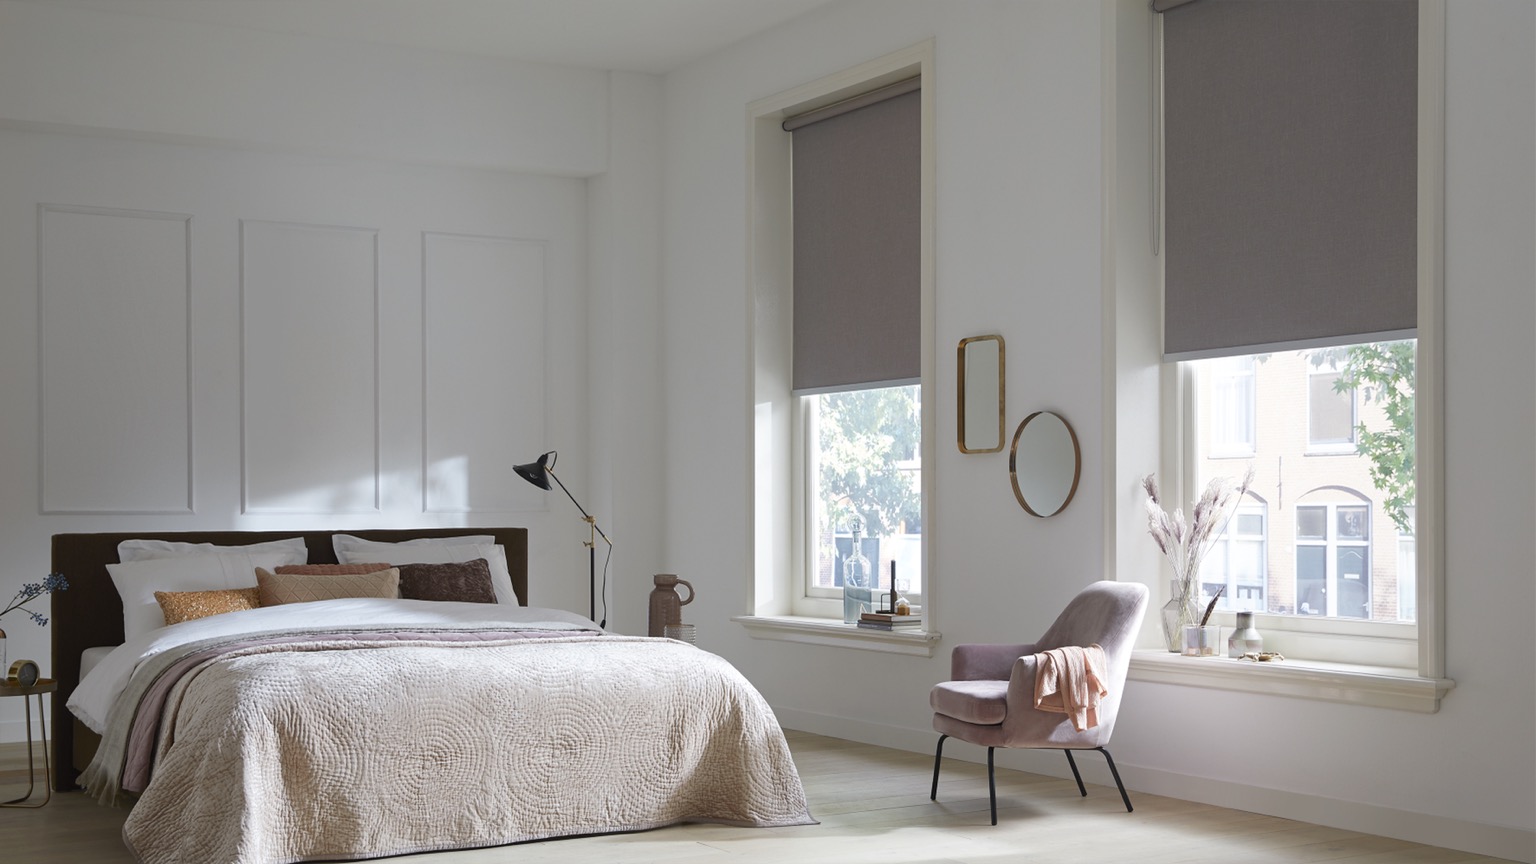 Luxe raambekleding in slaapkamer | Sunway | Stek Magazine